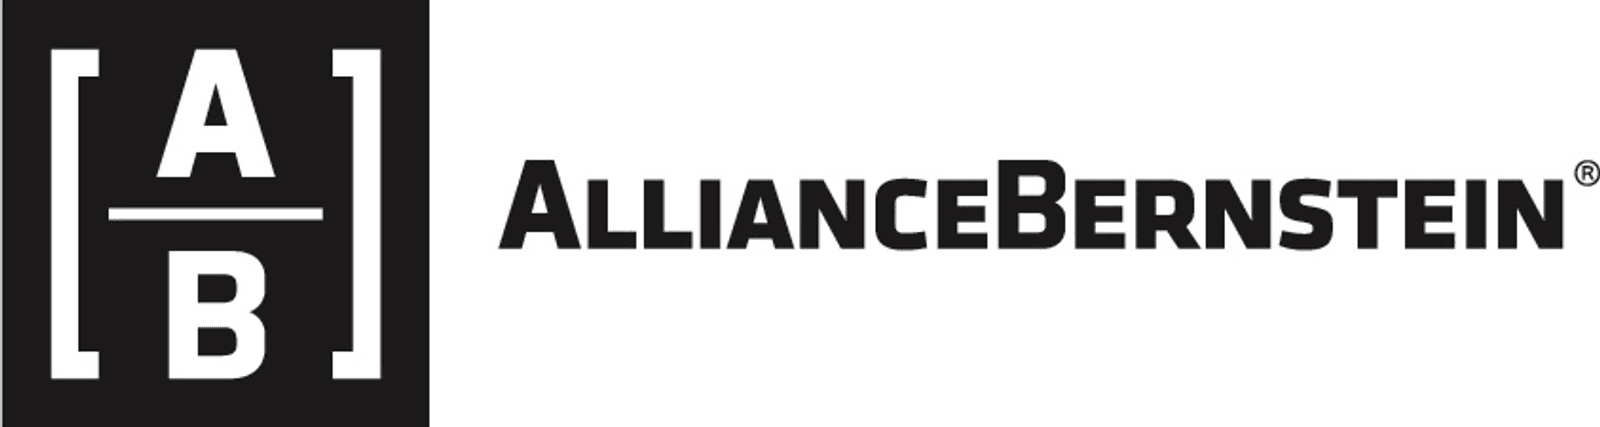 Alliance Bernstein 2017 horiz logo